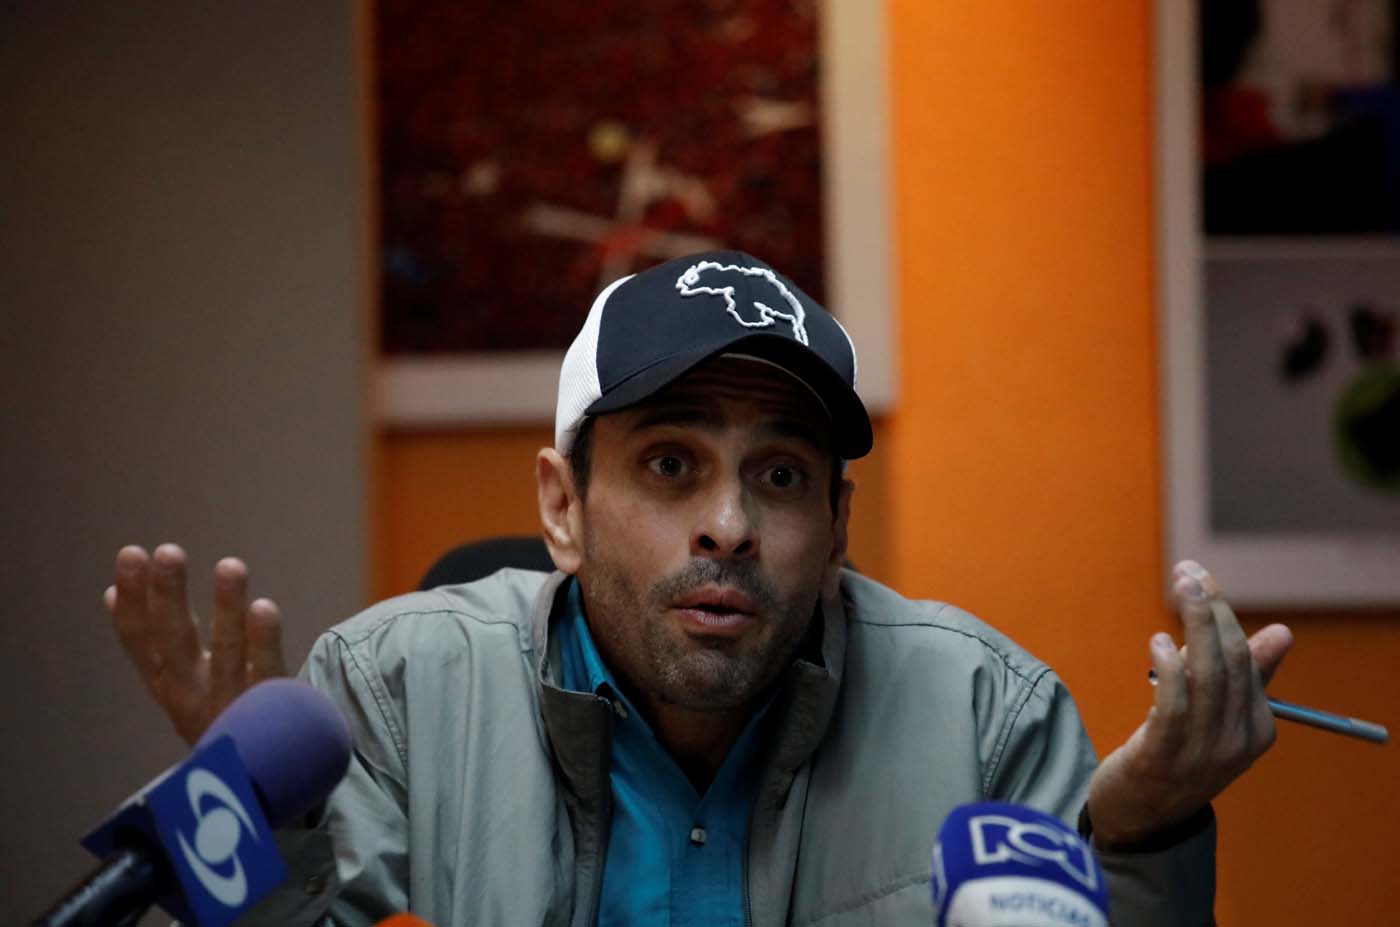 Extraoficial: La Fuerza del Cambio, partido de Capriles, estaría inscribiendo sus candidatos ante el CNE írrito